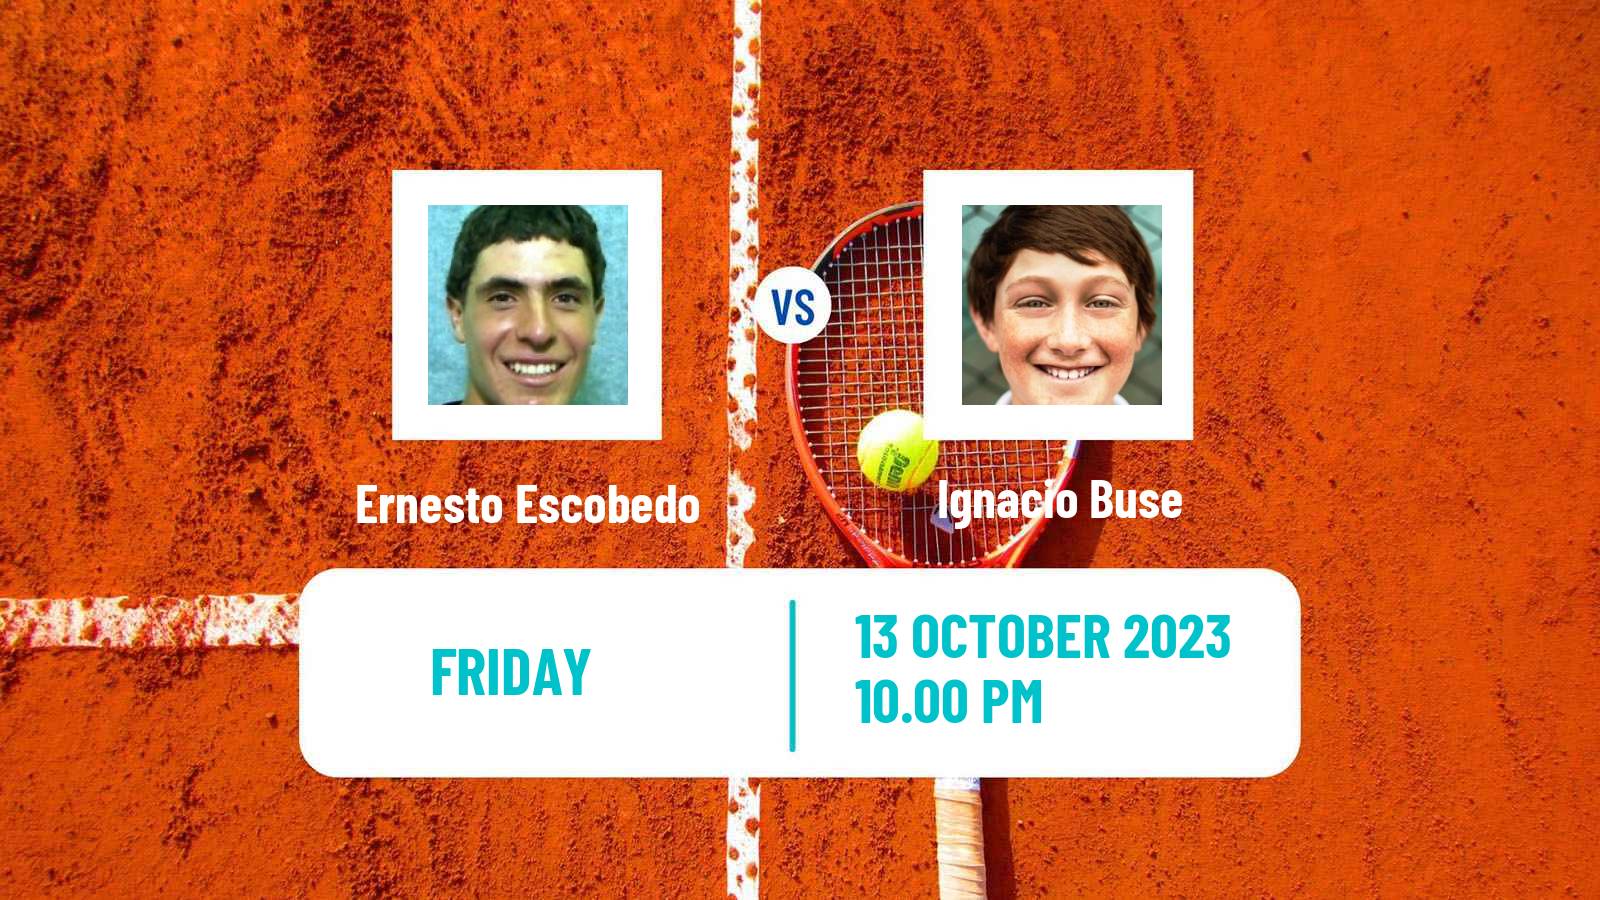 Tennis ITF M25 Zapopan Men Ernesto Escobedo - Ignacio Buse